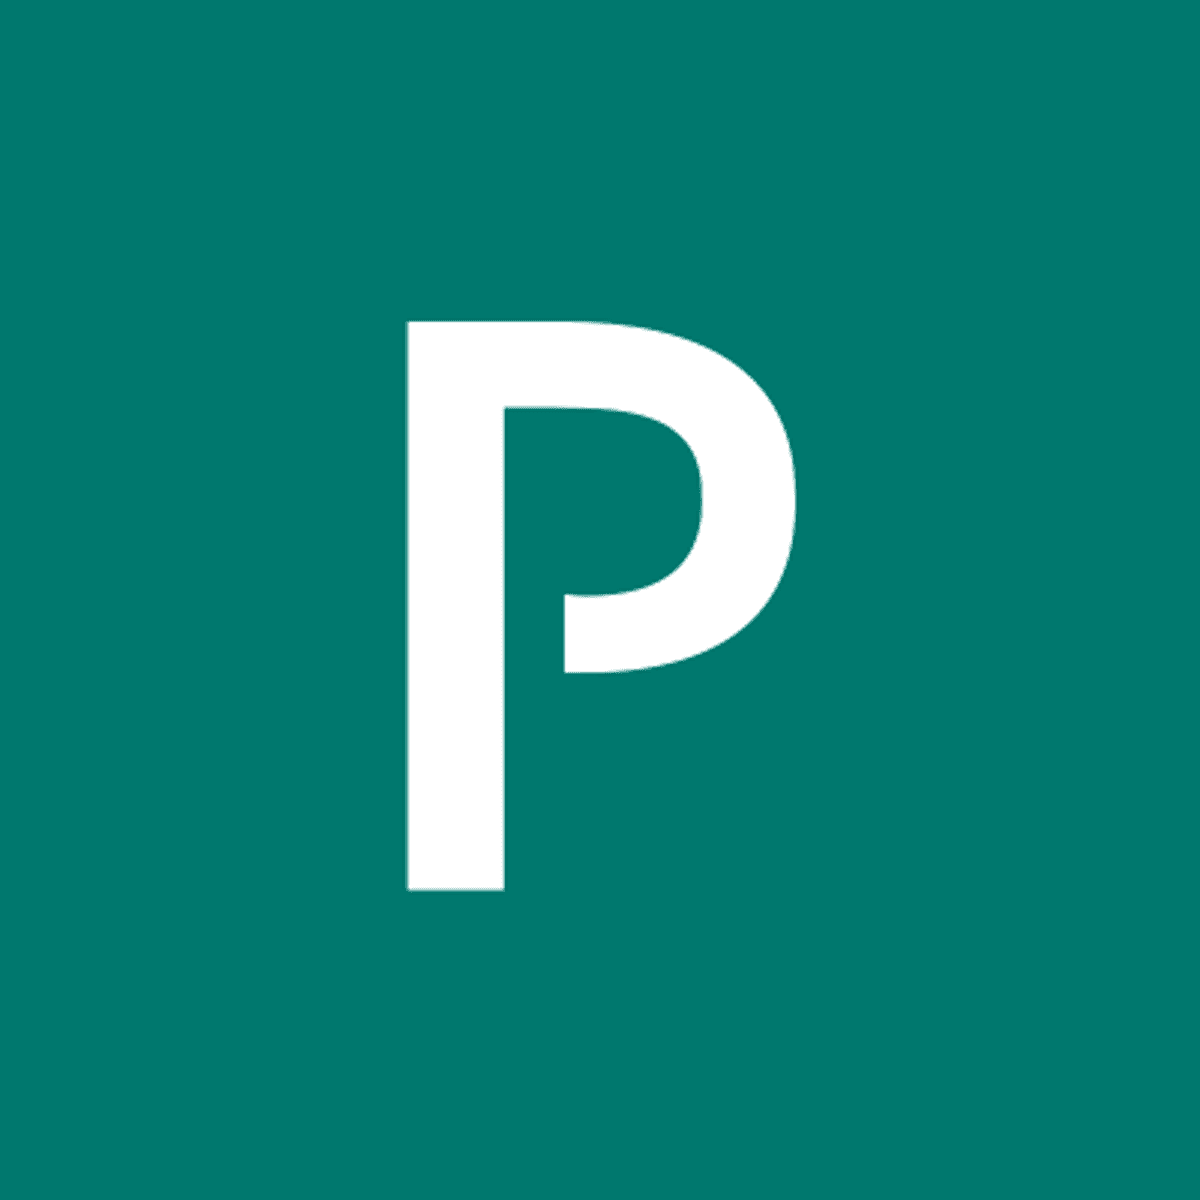 Pivotal maakt Kubernetes eenvoudiger voor developers en operators image